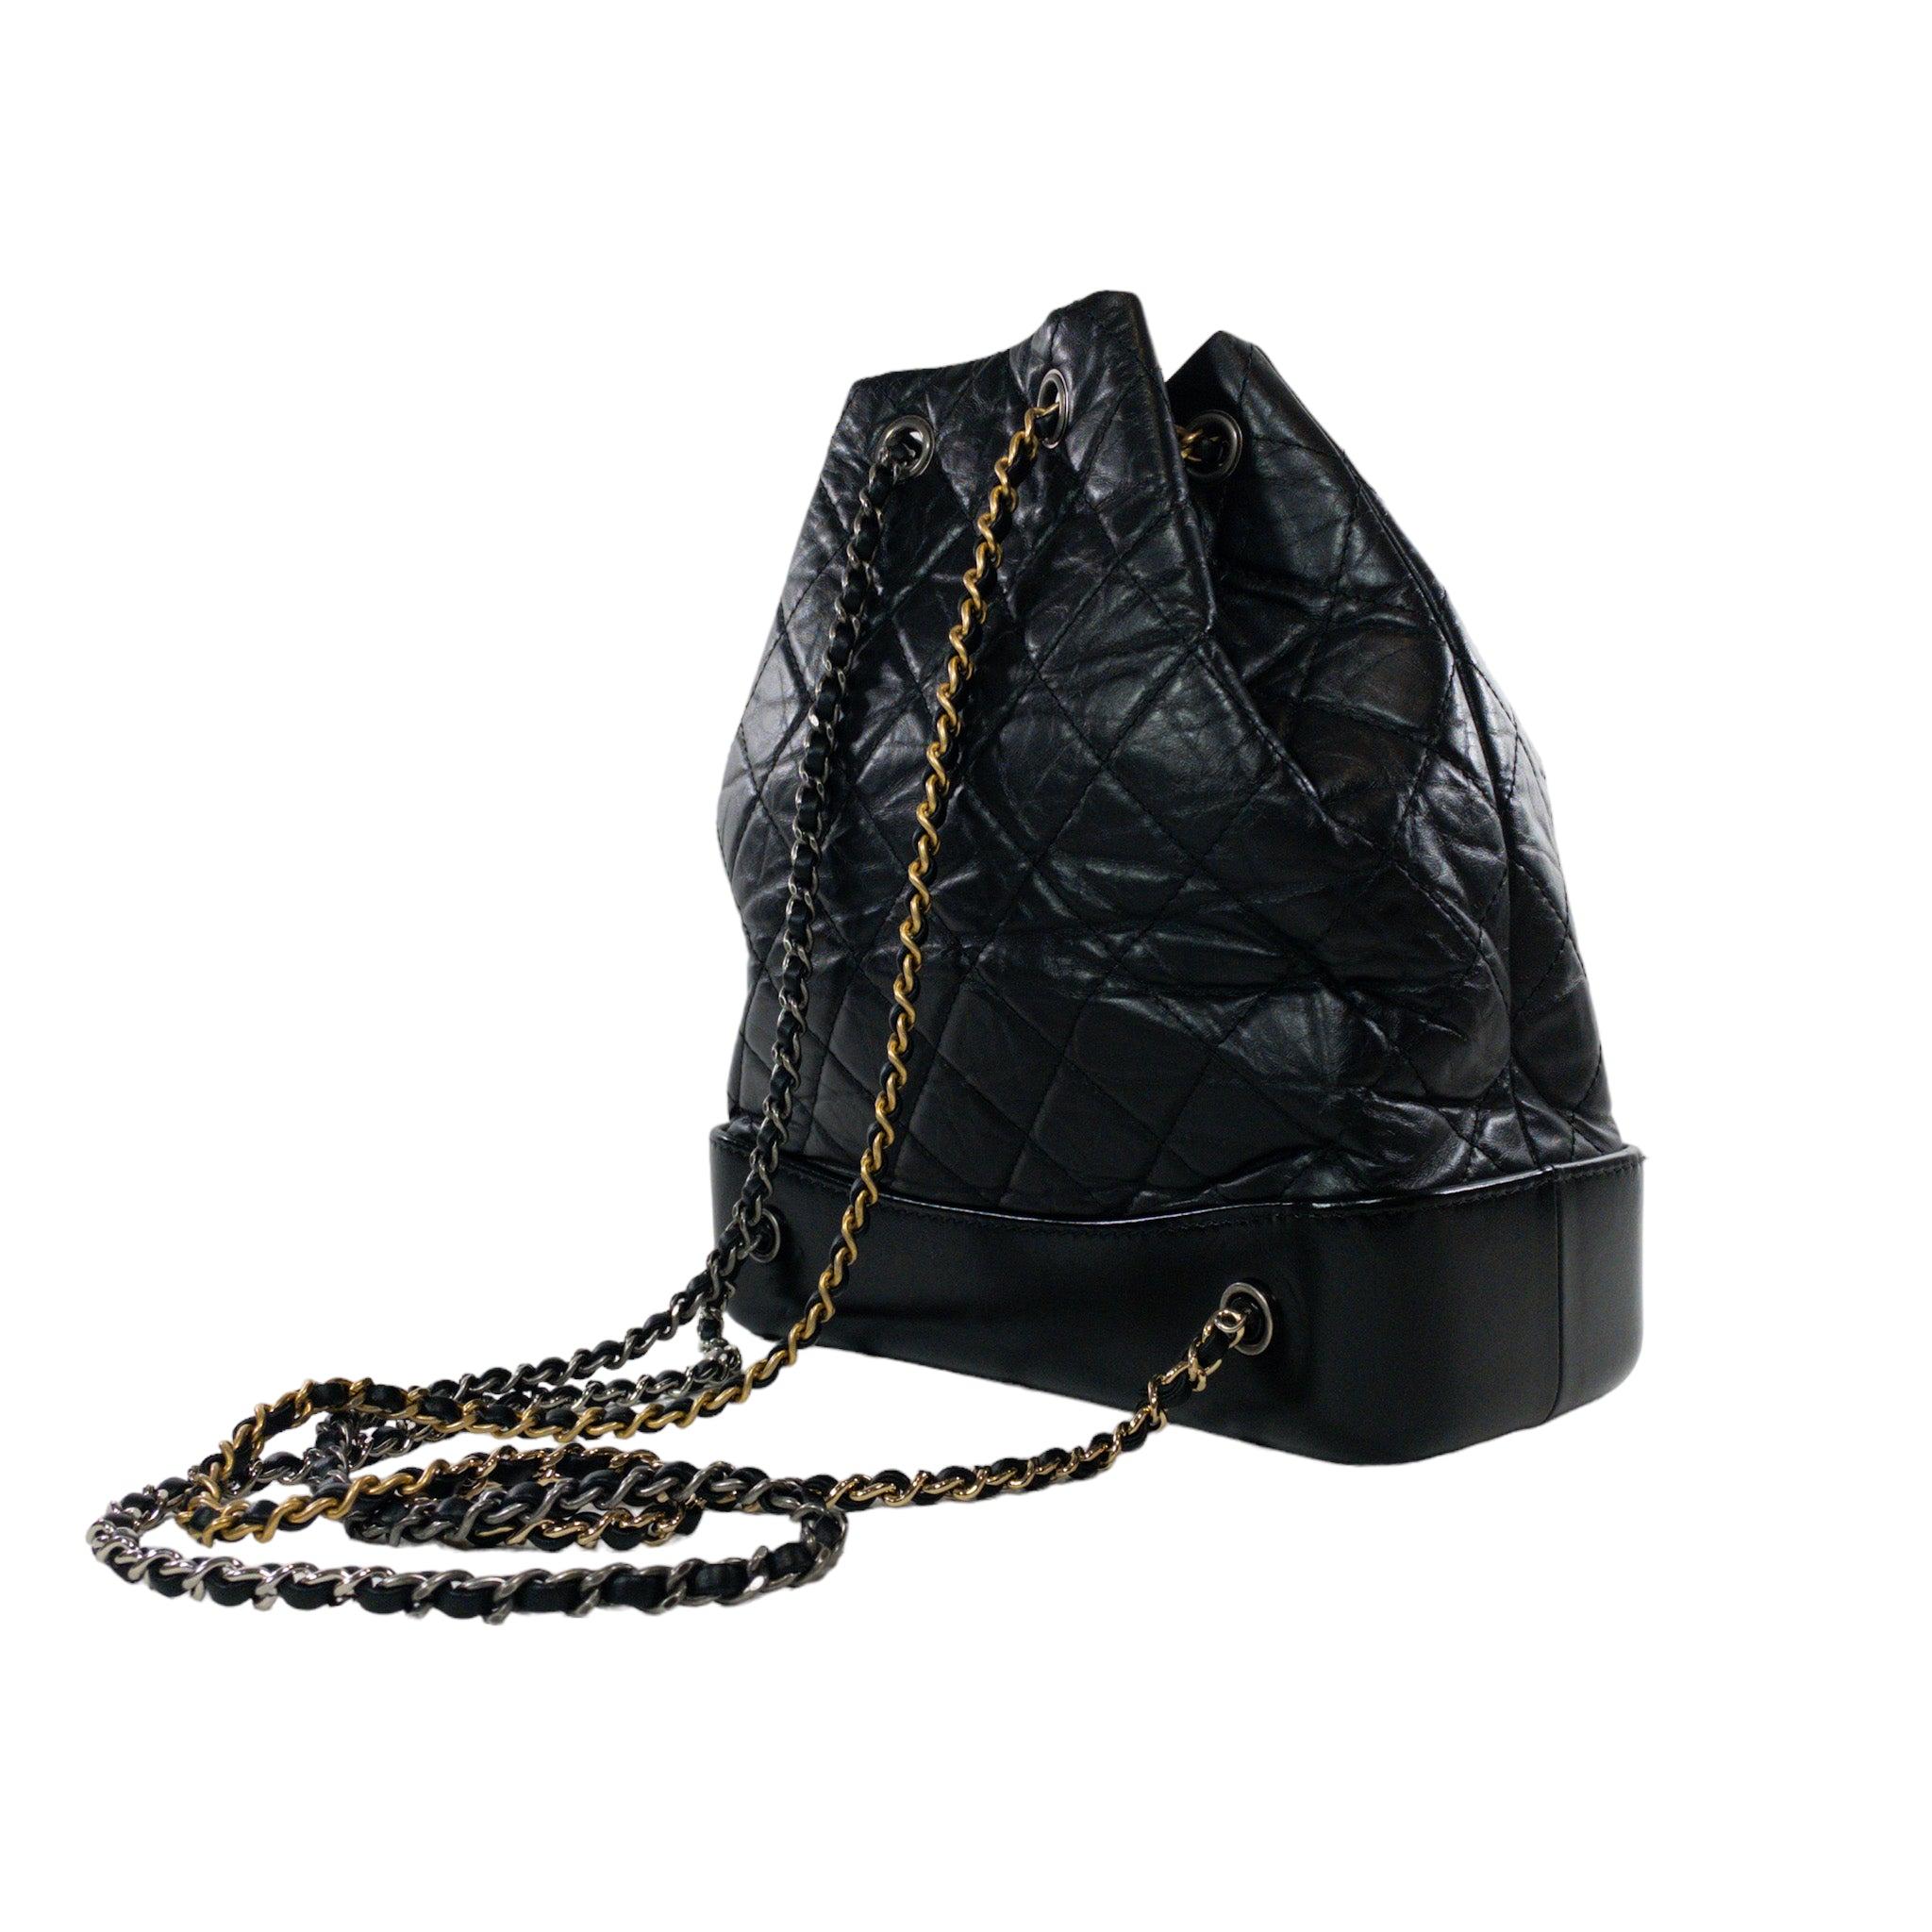 Chanel Kleiner schwarzer Gabrielle-Rucksack

Dies ist eine authentische Chanel Gabrielle kleinen Kordelzug Rucksack. Schwarzes, gestepptes Leder mit glasiertem, strukturiertem Boden. Mehrfarbige gewebte Kettenbeschläge. Ruthenium CC im Vordergrund.